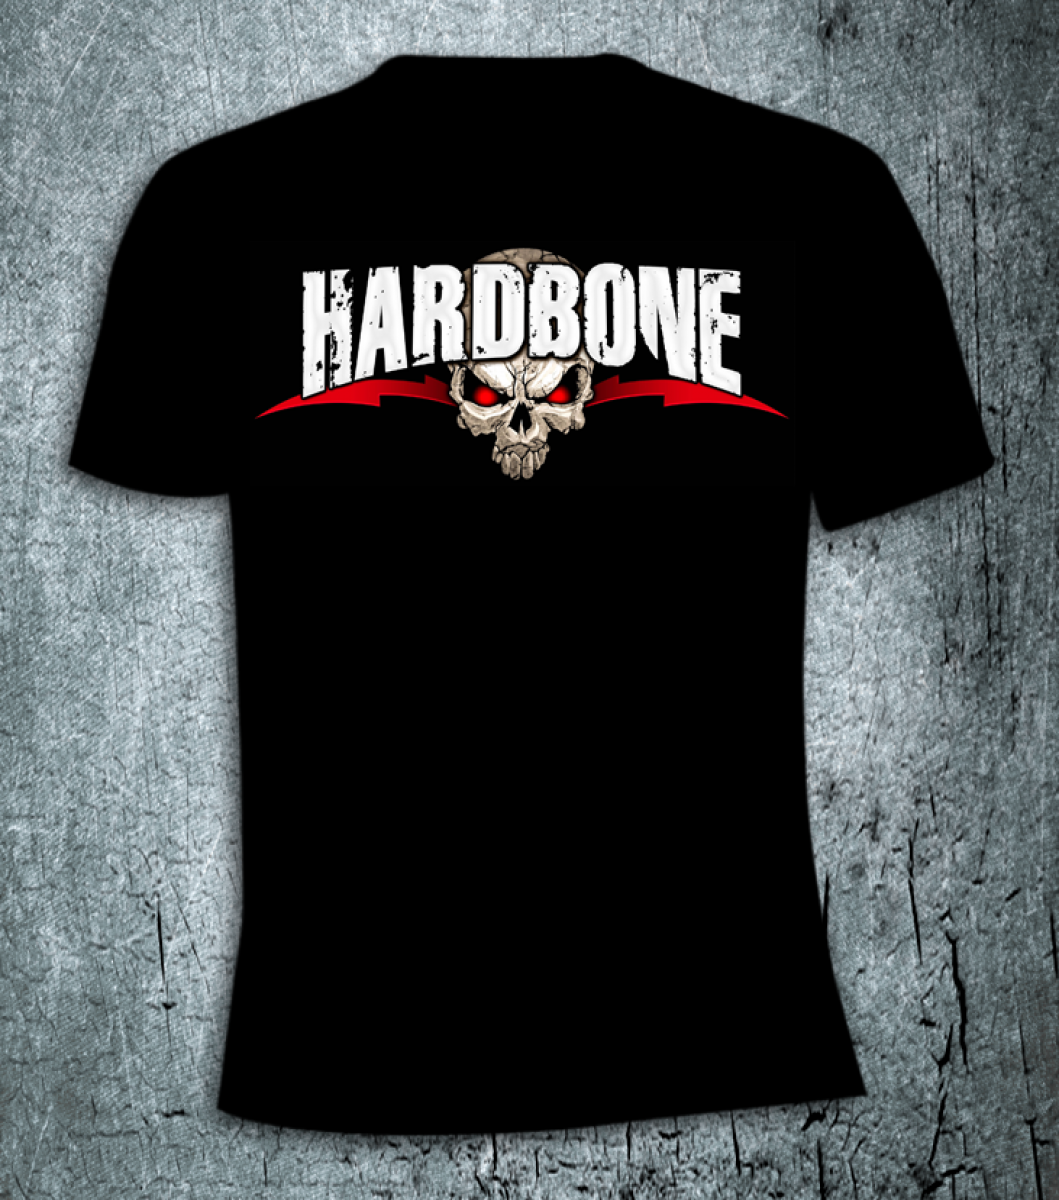 Hardbone “Logo” T-Shirt